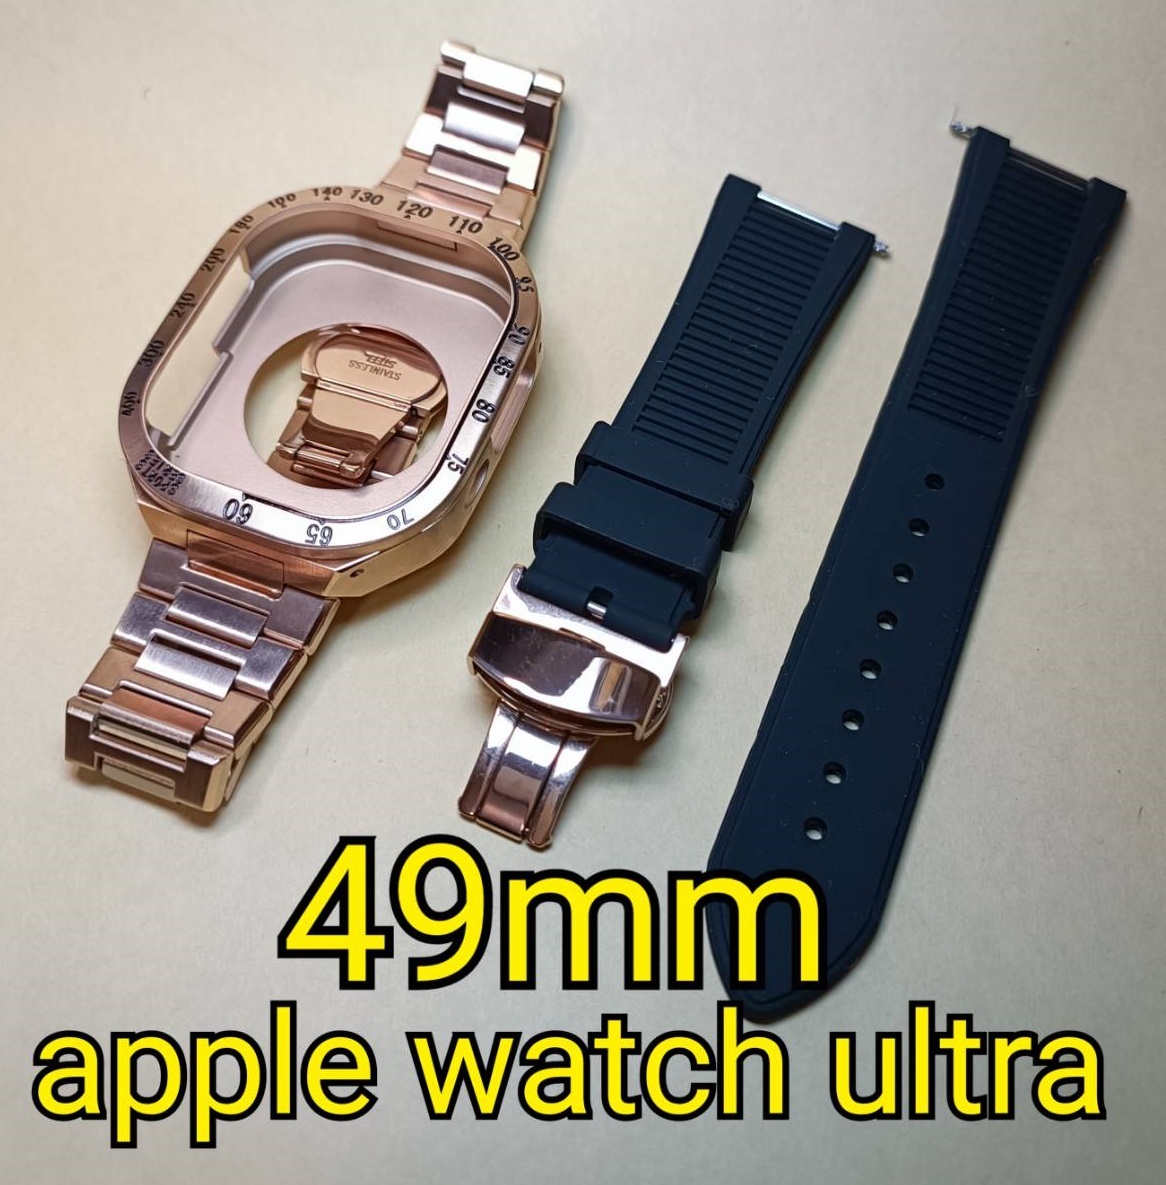 カーボンRG 49mm apple watch ultra アップルウォッチウルトラ メタル